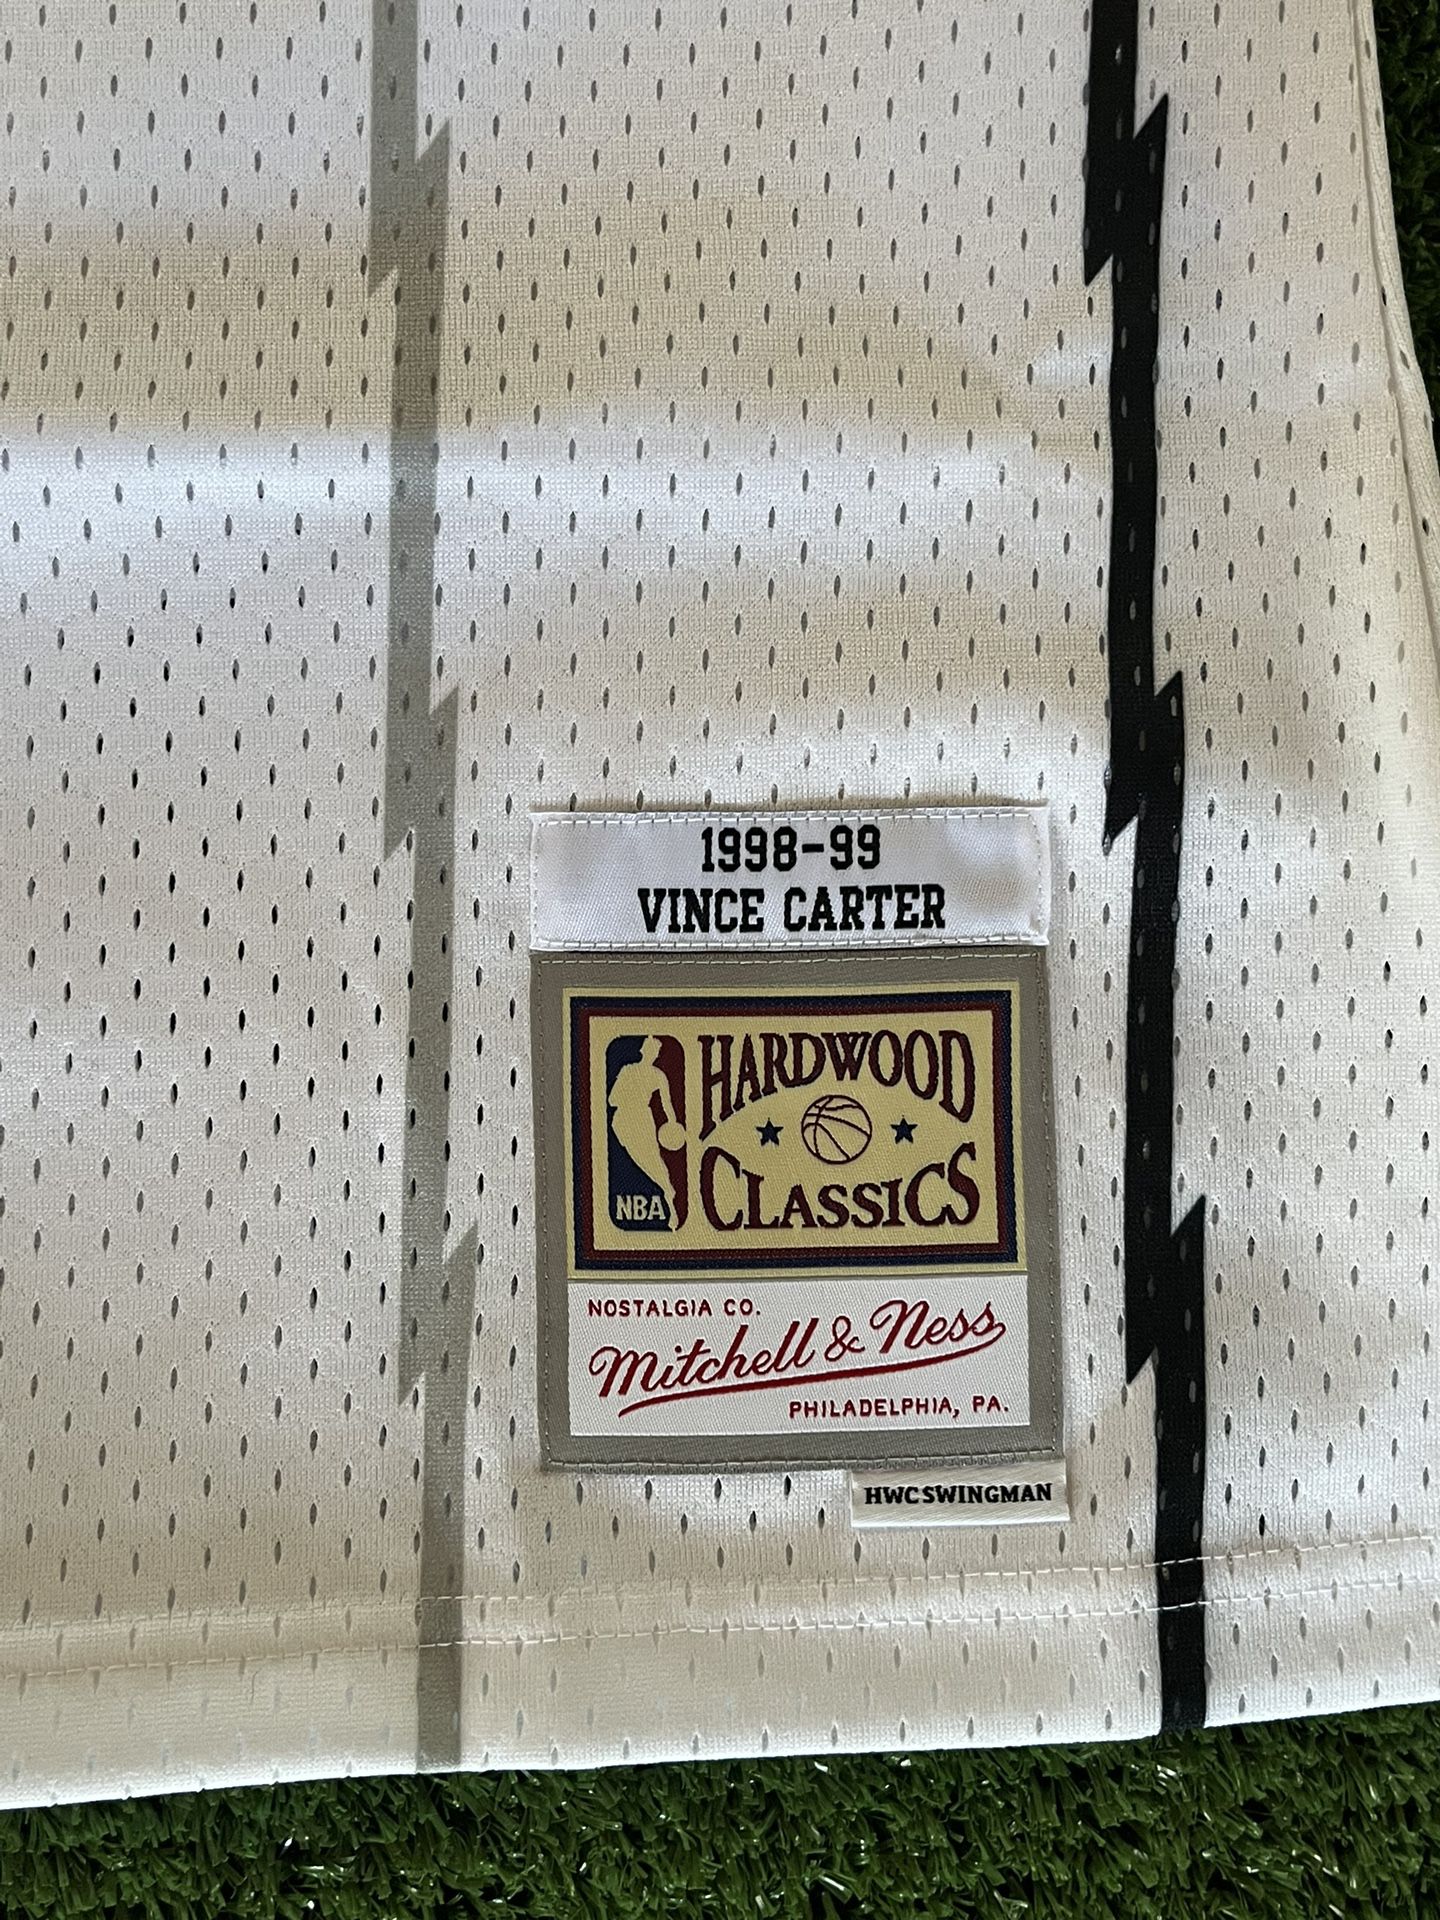 Vince Carter Vintage Raptors Jersey for Sale in San Diego, CA - OfferUp